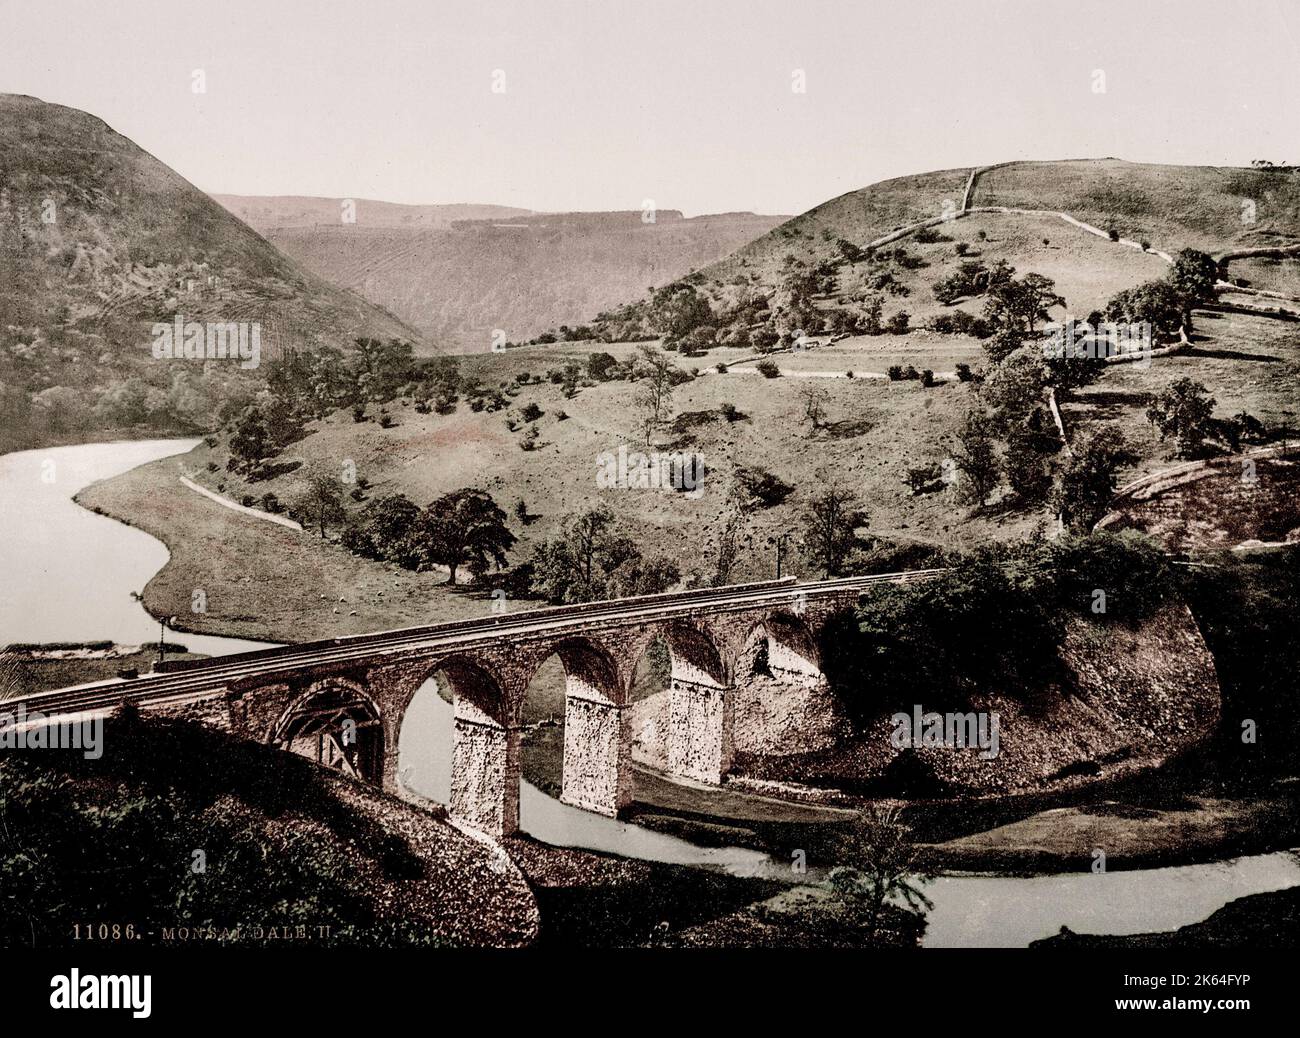 Jahrgang 19. Jahrhundert / 1900 Foto: Monsal Dale - Grabstein Viadukt, Peak District. Stockfoto